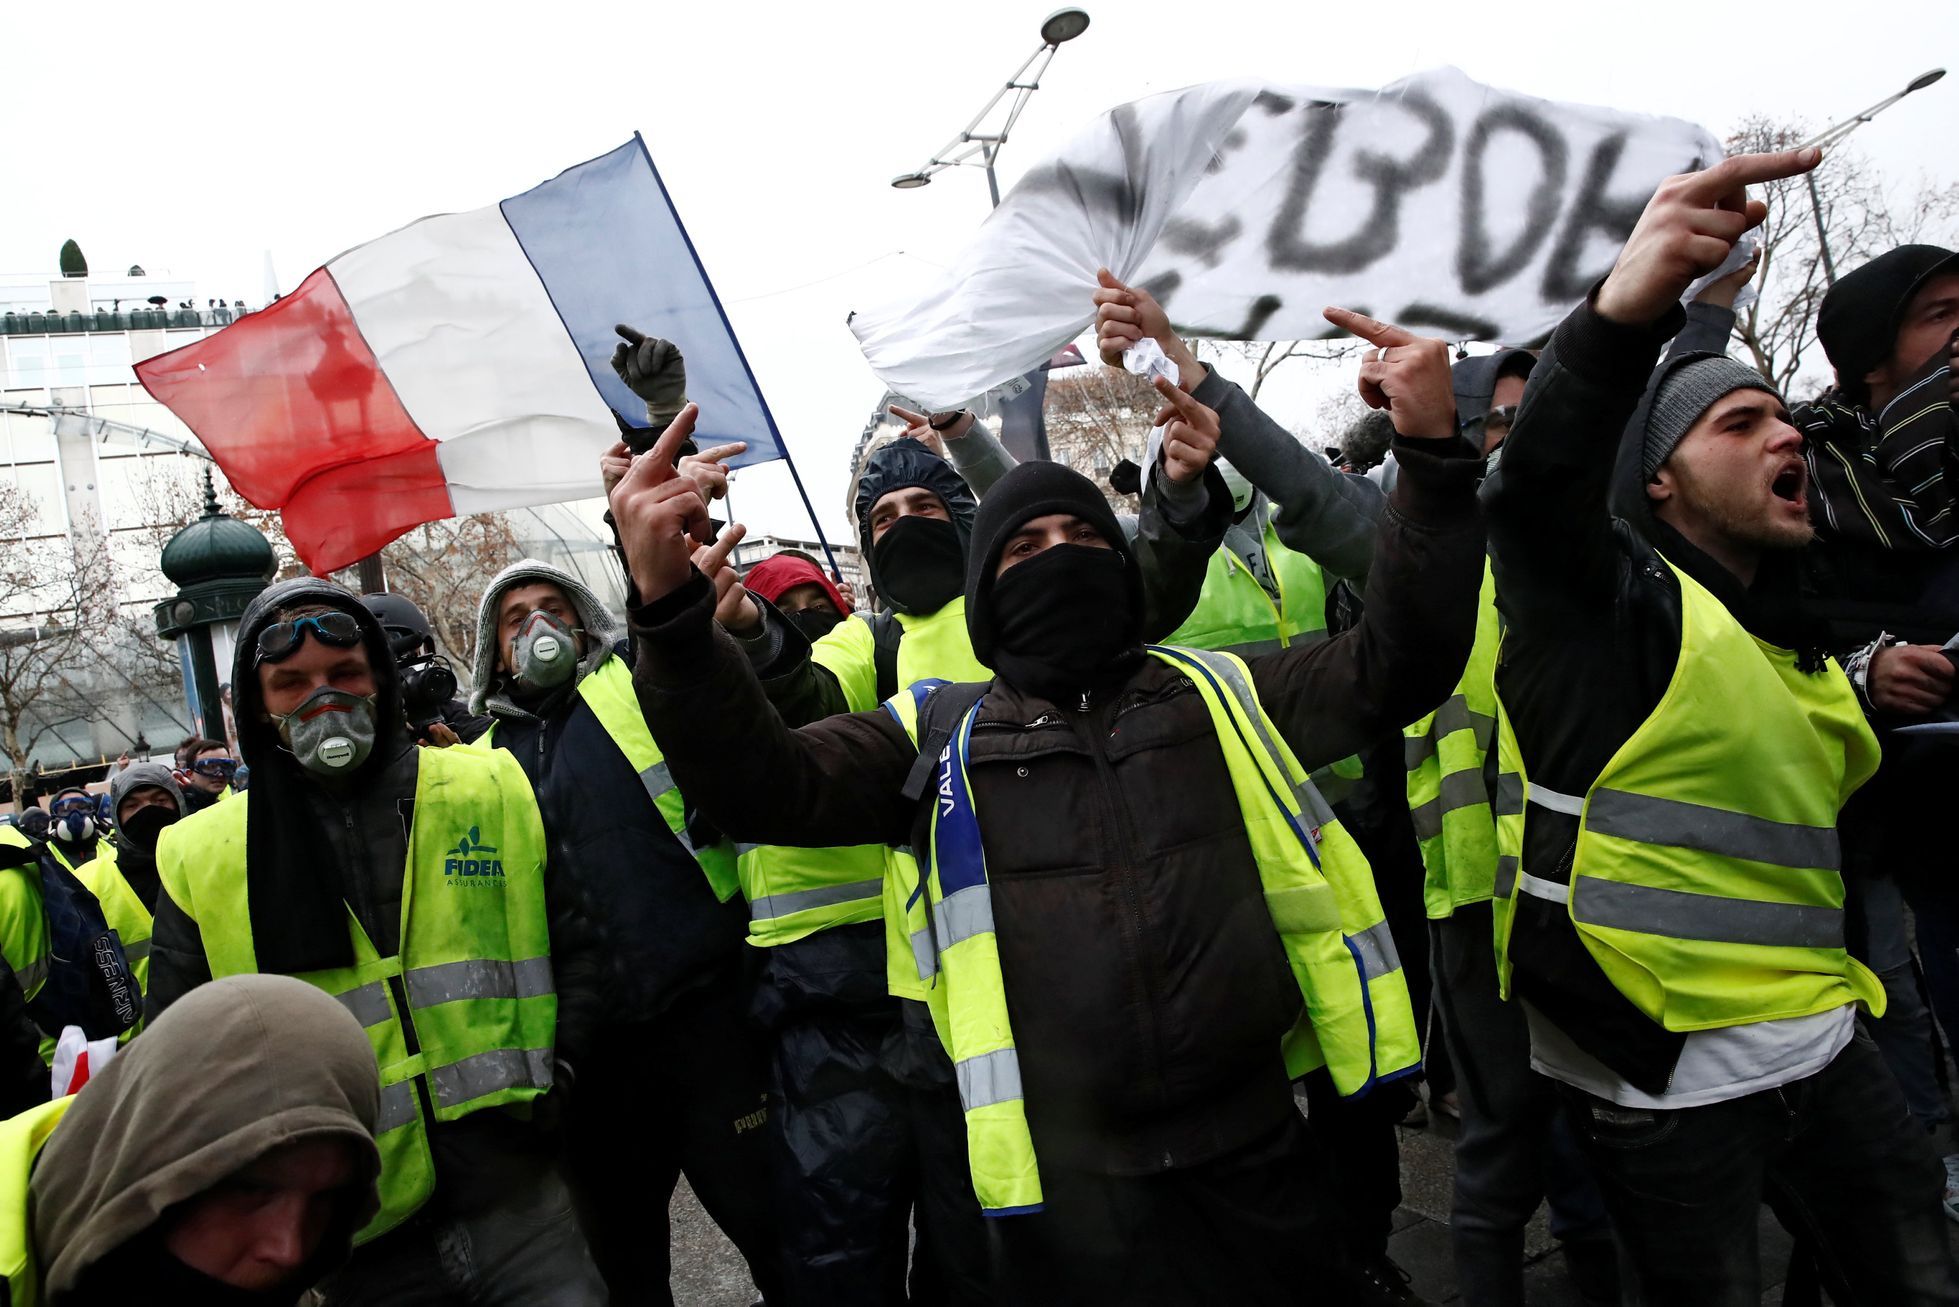 Manifestations en France : les gilets jaunes incendient les péages, provoquant le chaos sur l’autoroute